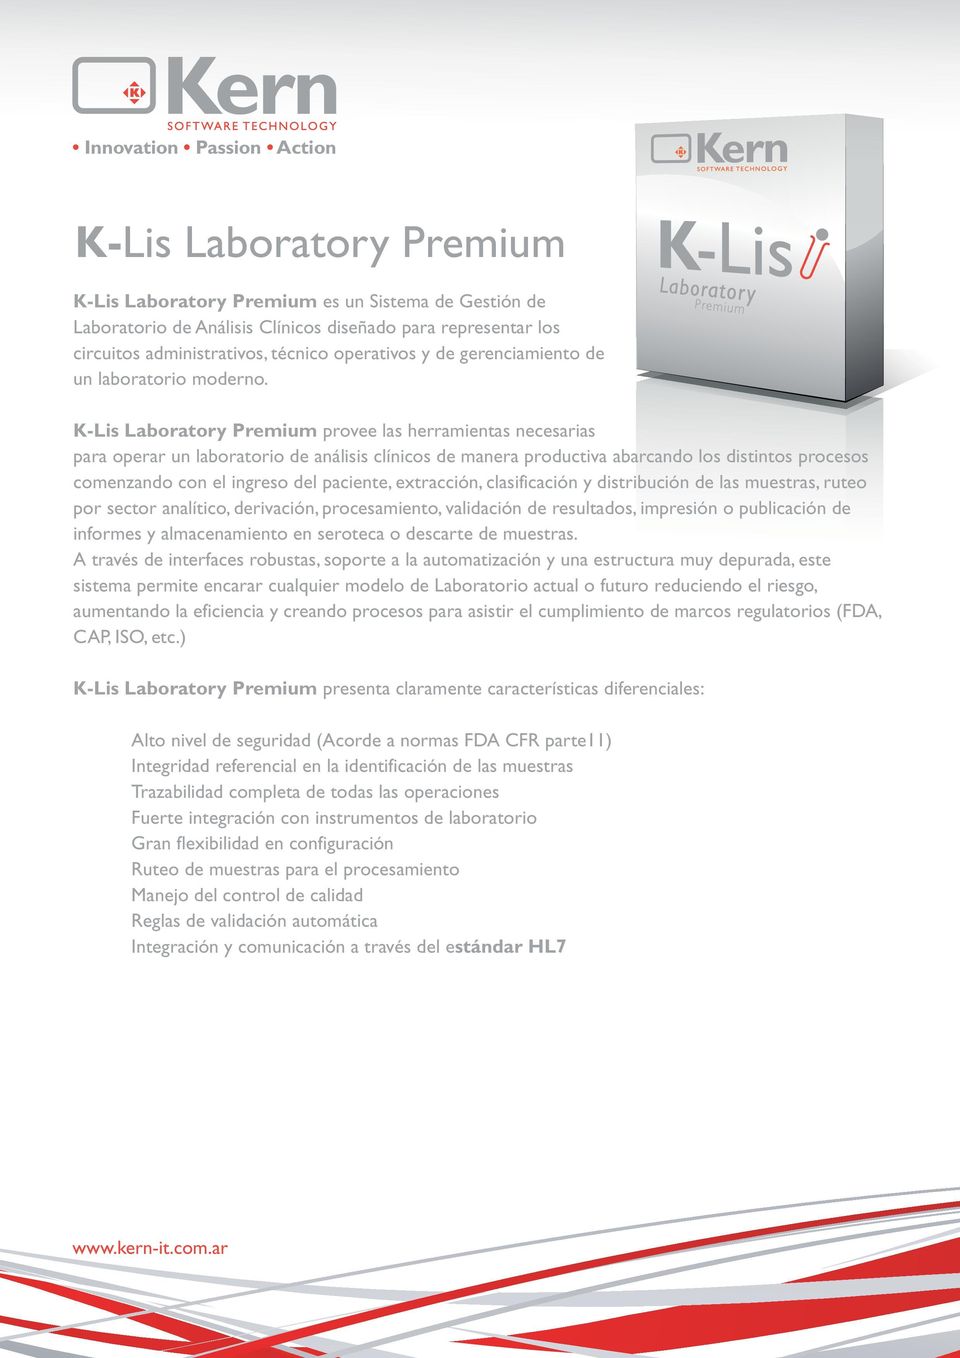 K-Lis Laboratory Premium provee las herramientas necesarias para operar un laboratorio de análisis clínicos de manera productiva abarcando los distintos procesos comenzando con el ingreso del